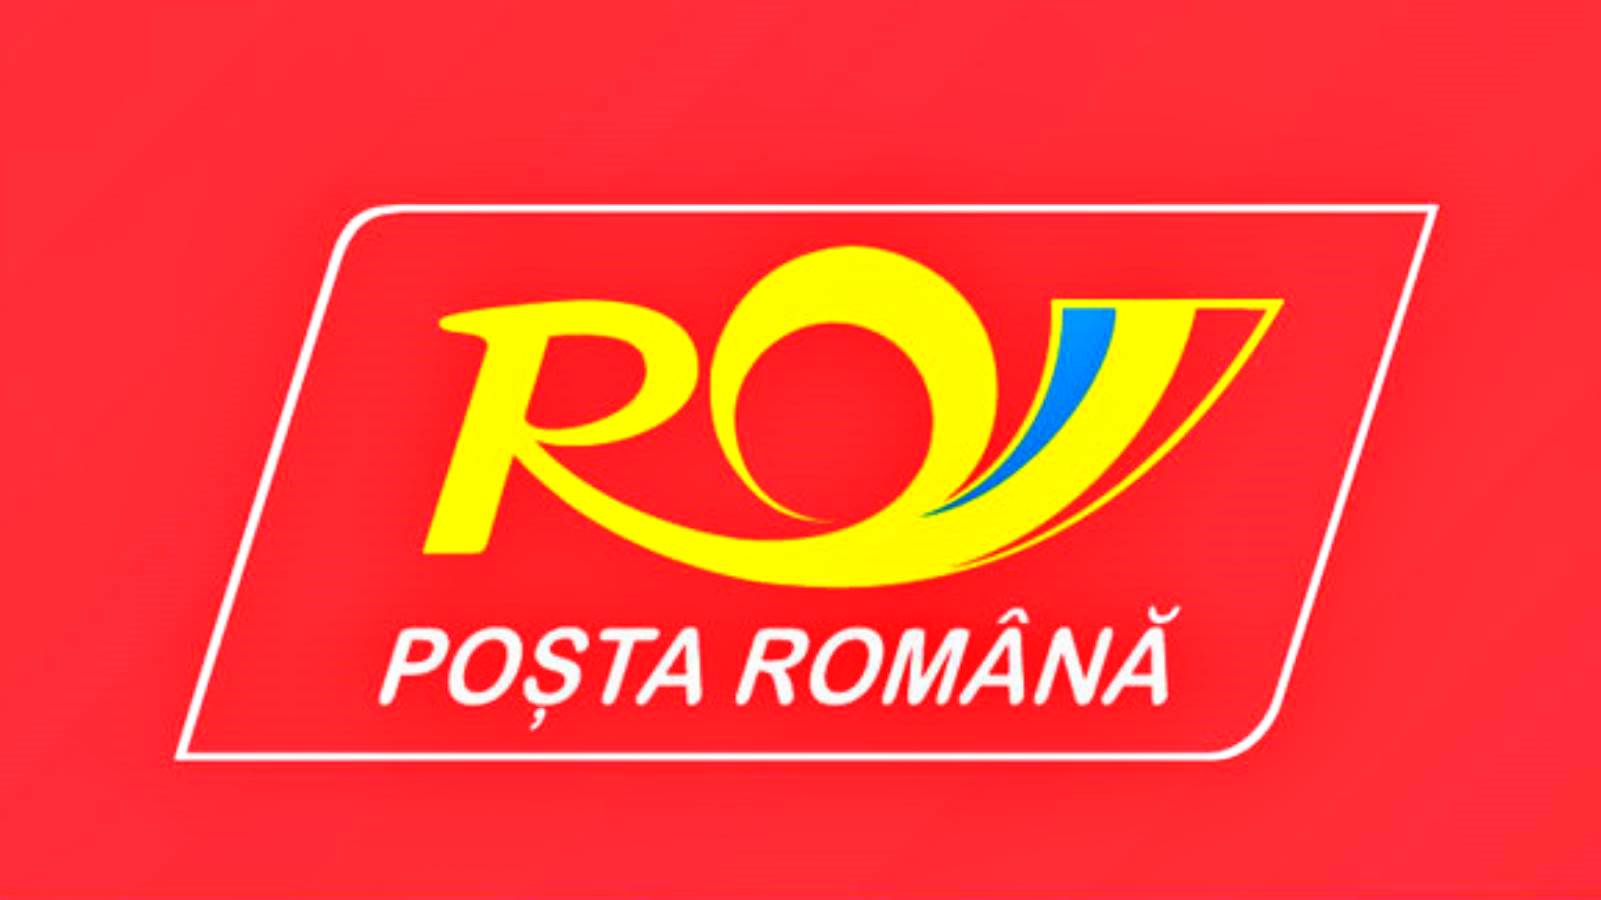 Romanian postivaroitus kielletyistä esineistä paketeissa